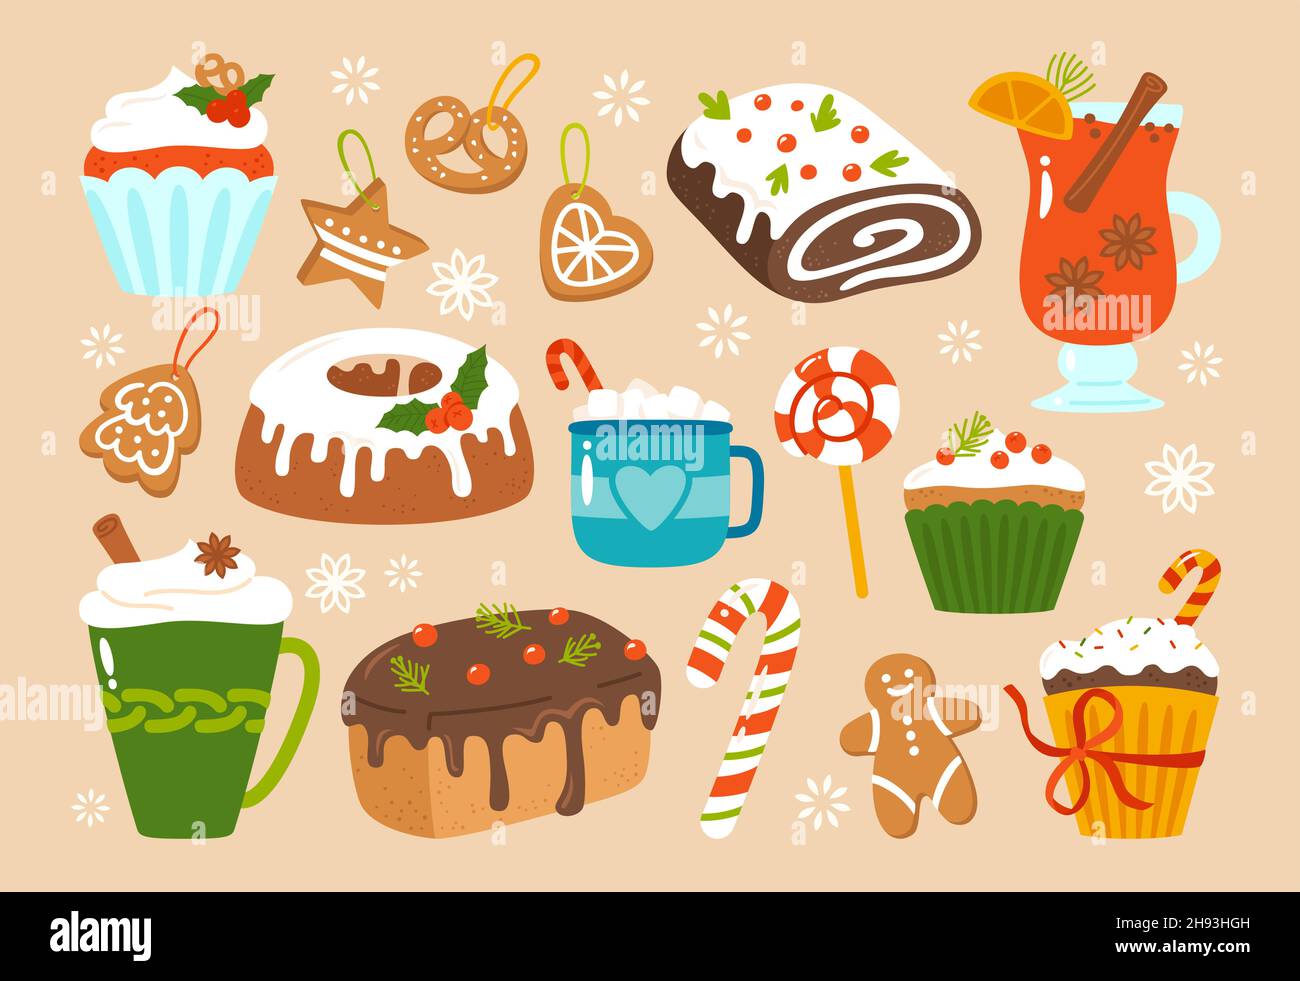 Weihnachten Süßigkeiten behandeln Cartoon-Set. Neujahr Mann Lebkuchen und Kakao Tasse, Kuchen Muffin, Lutscher Süßigkeiten. Weihnachten Dekoration, Urlaub Scrapbook noel Design für Aufkleber Kit, Grußkarte, Party Einladung Stock Vektor